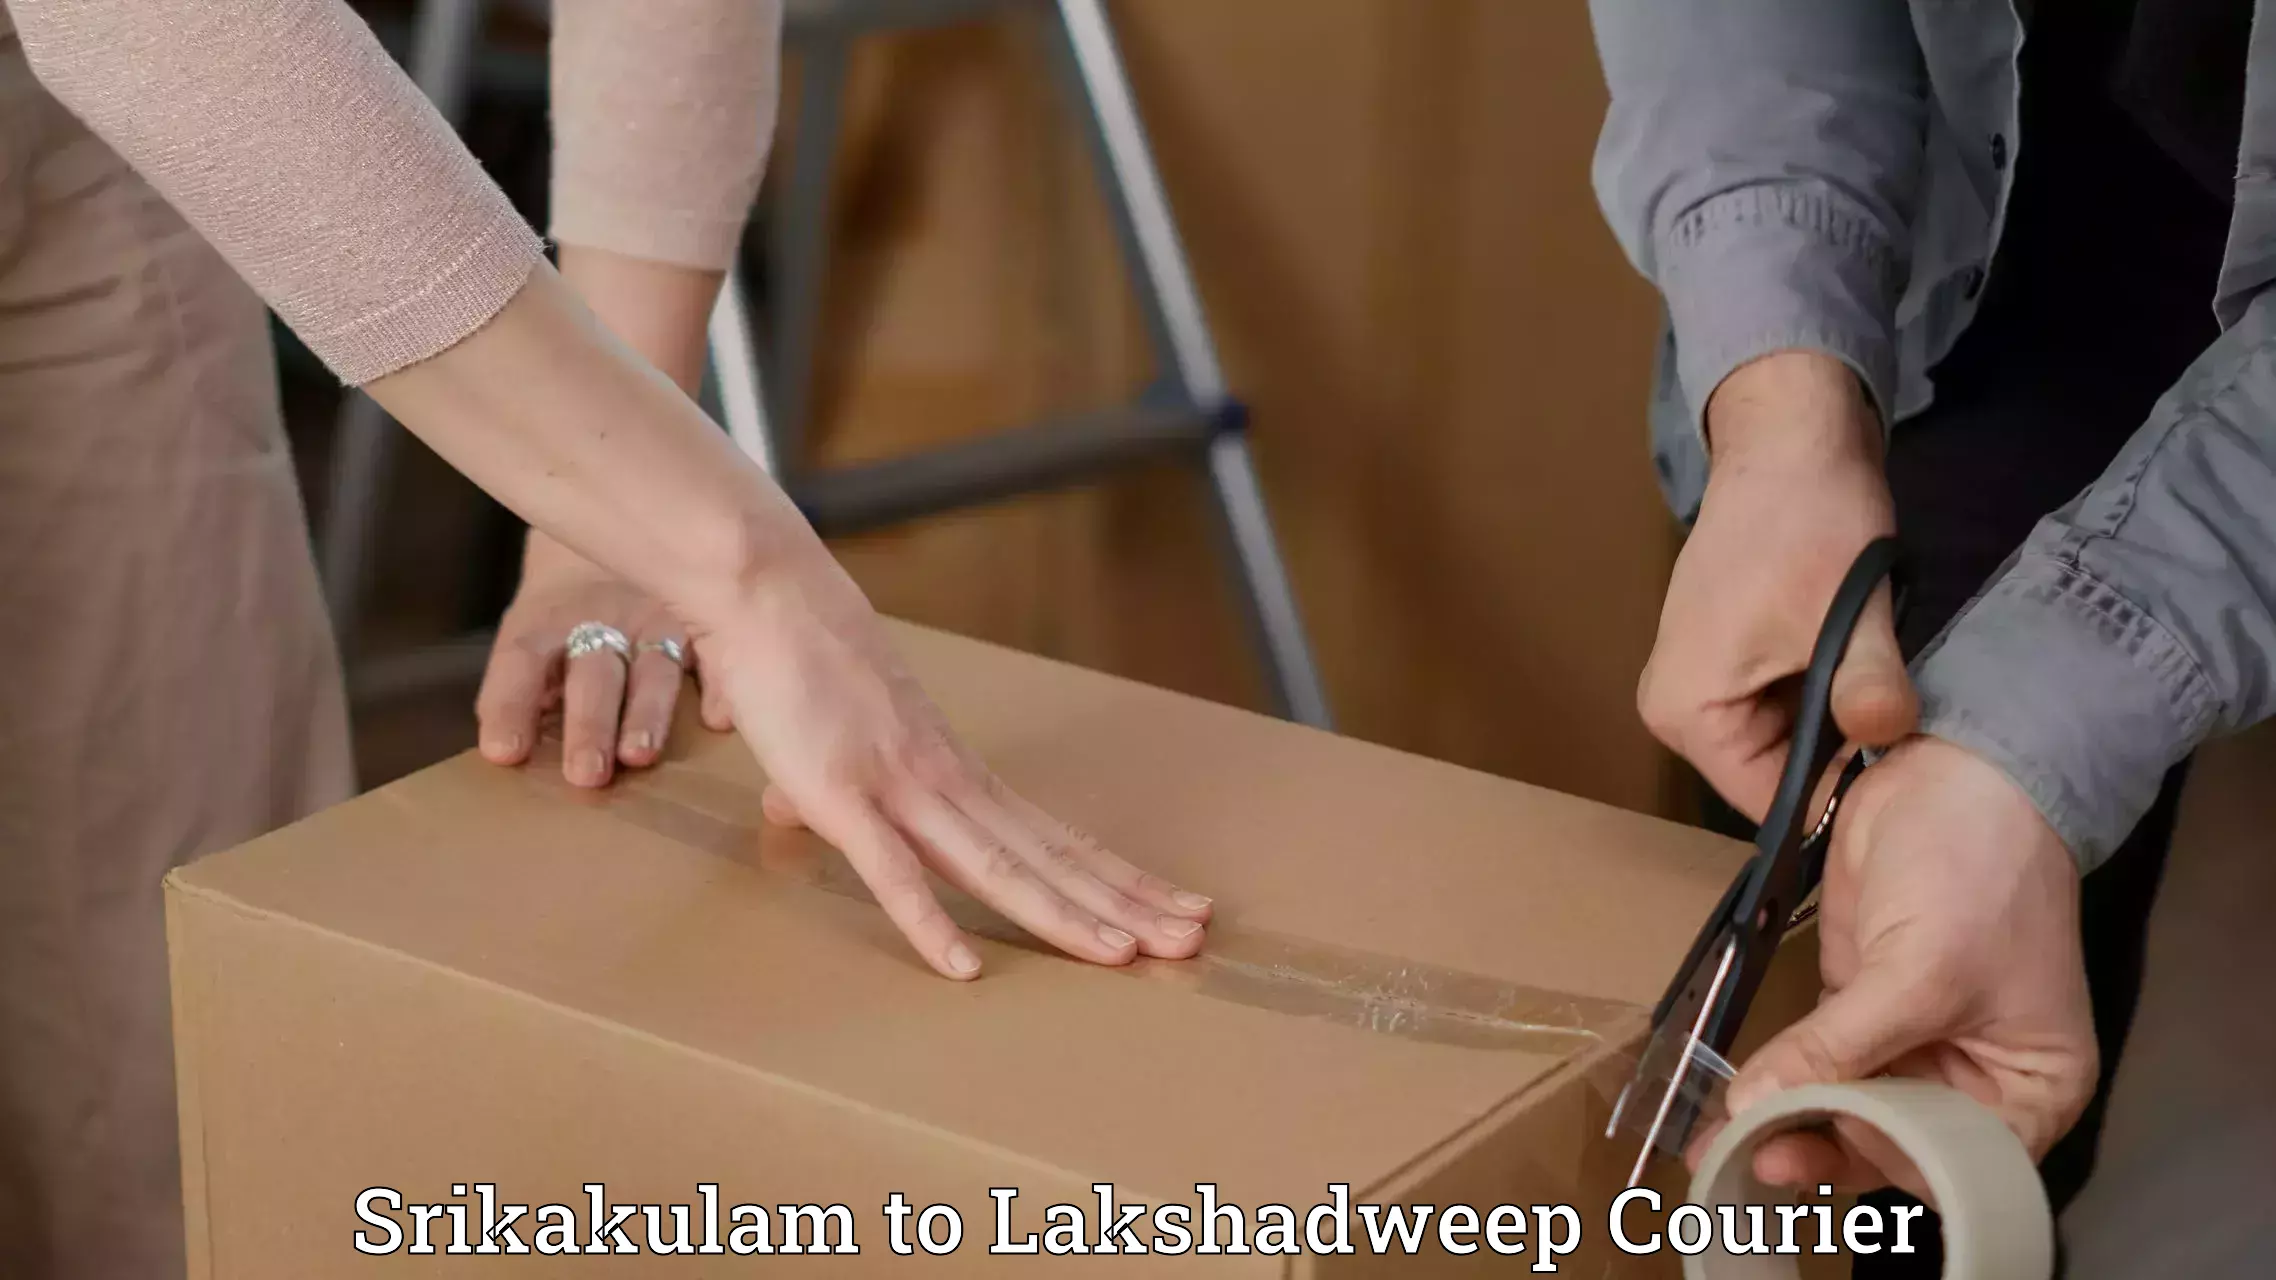 Luggage shipment processing Srikakulam to Lakshadweep